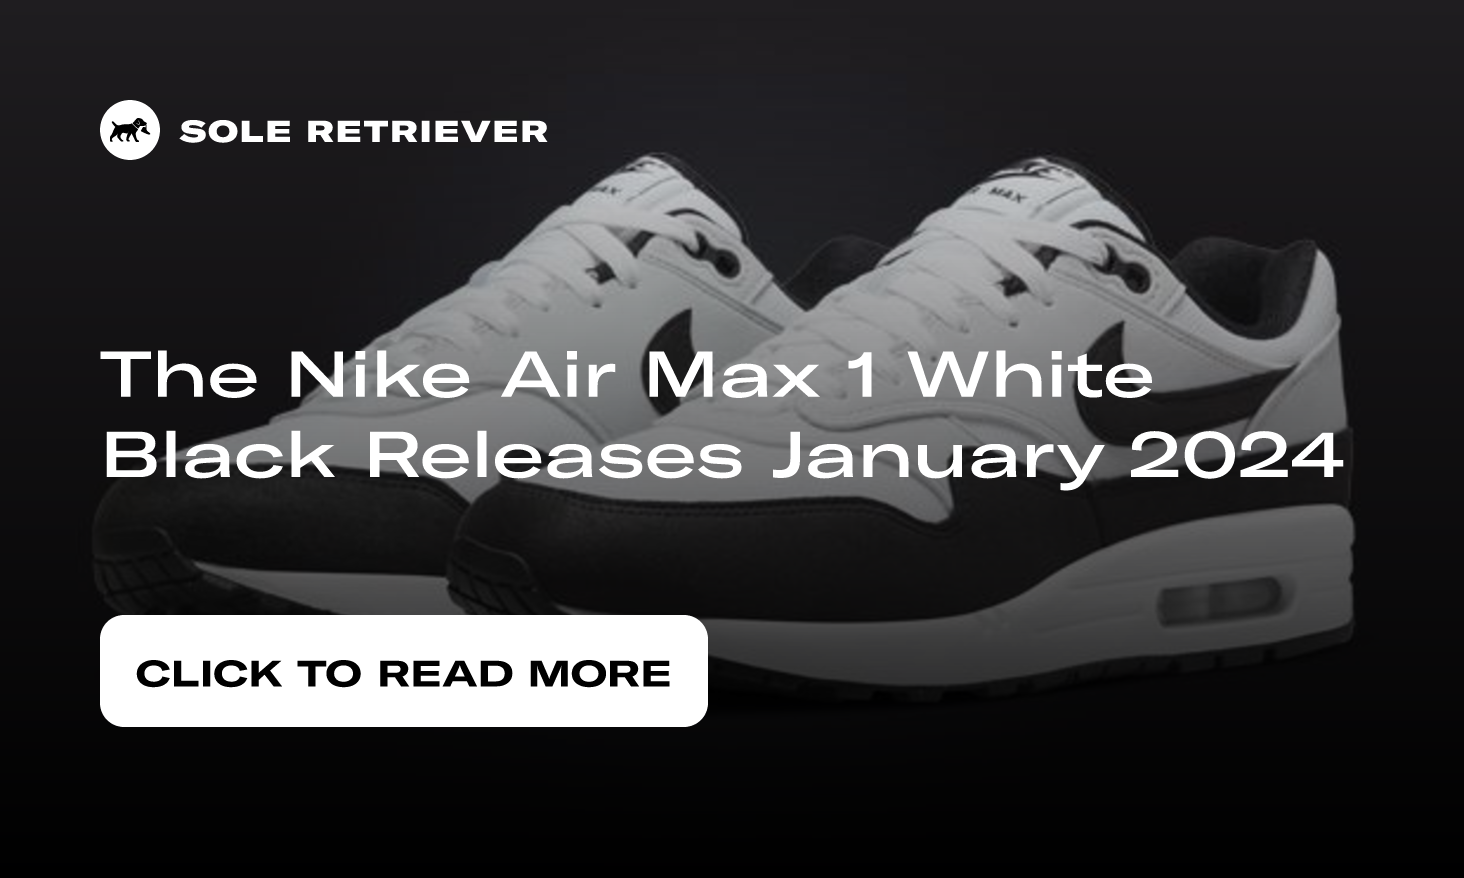 https://www.soleretriever.com/og/blog/nike-air-max-1-white-black-release-date-january-2024